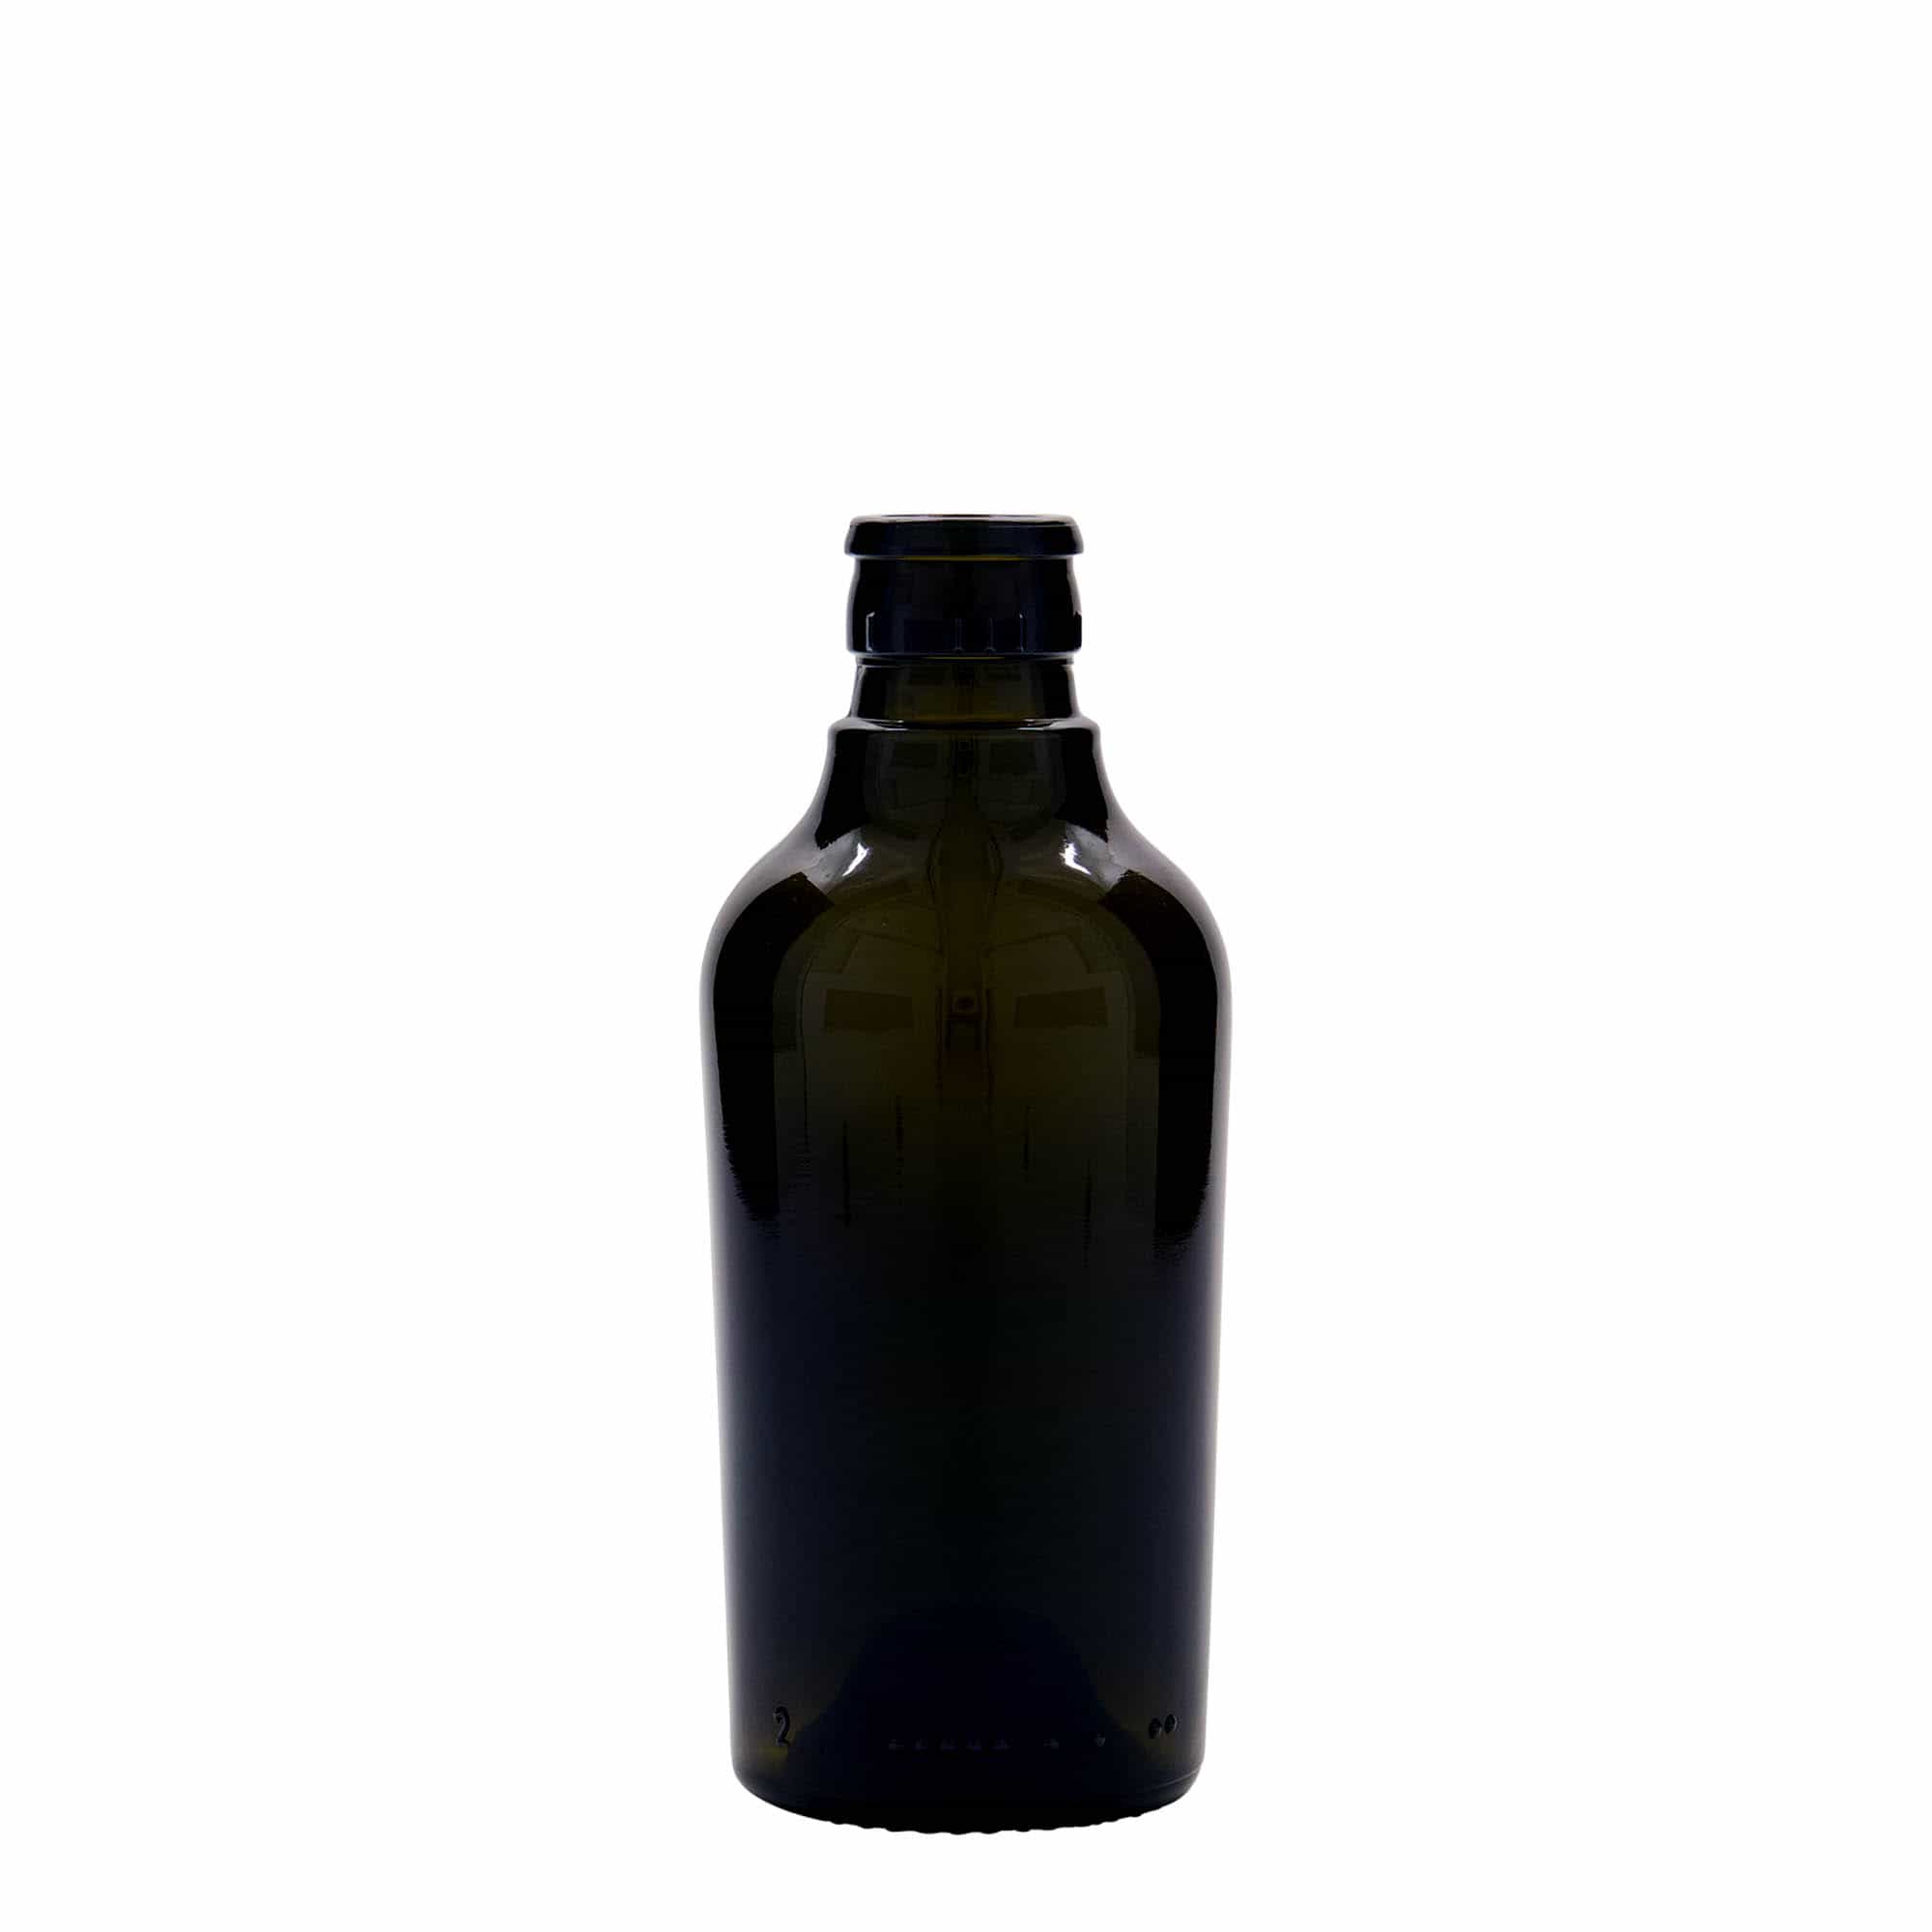 Azijn-/oliefles 'Oleum', 250 ml, glas, antiekgroen, monding: DOP